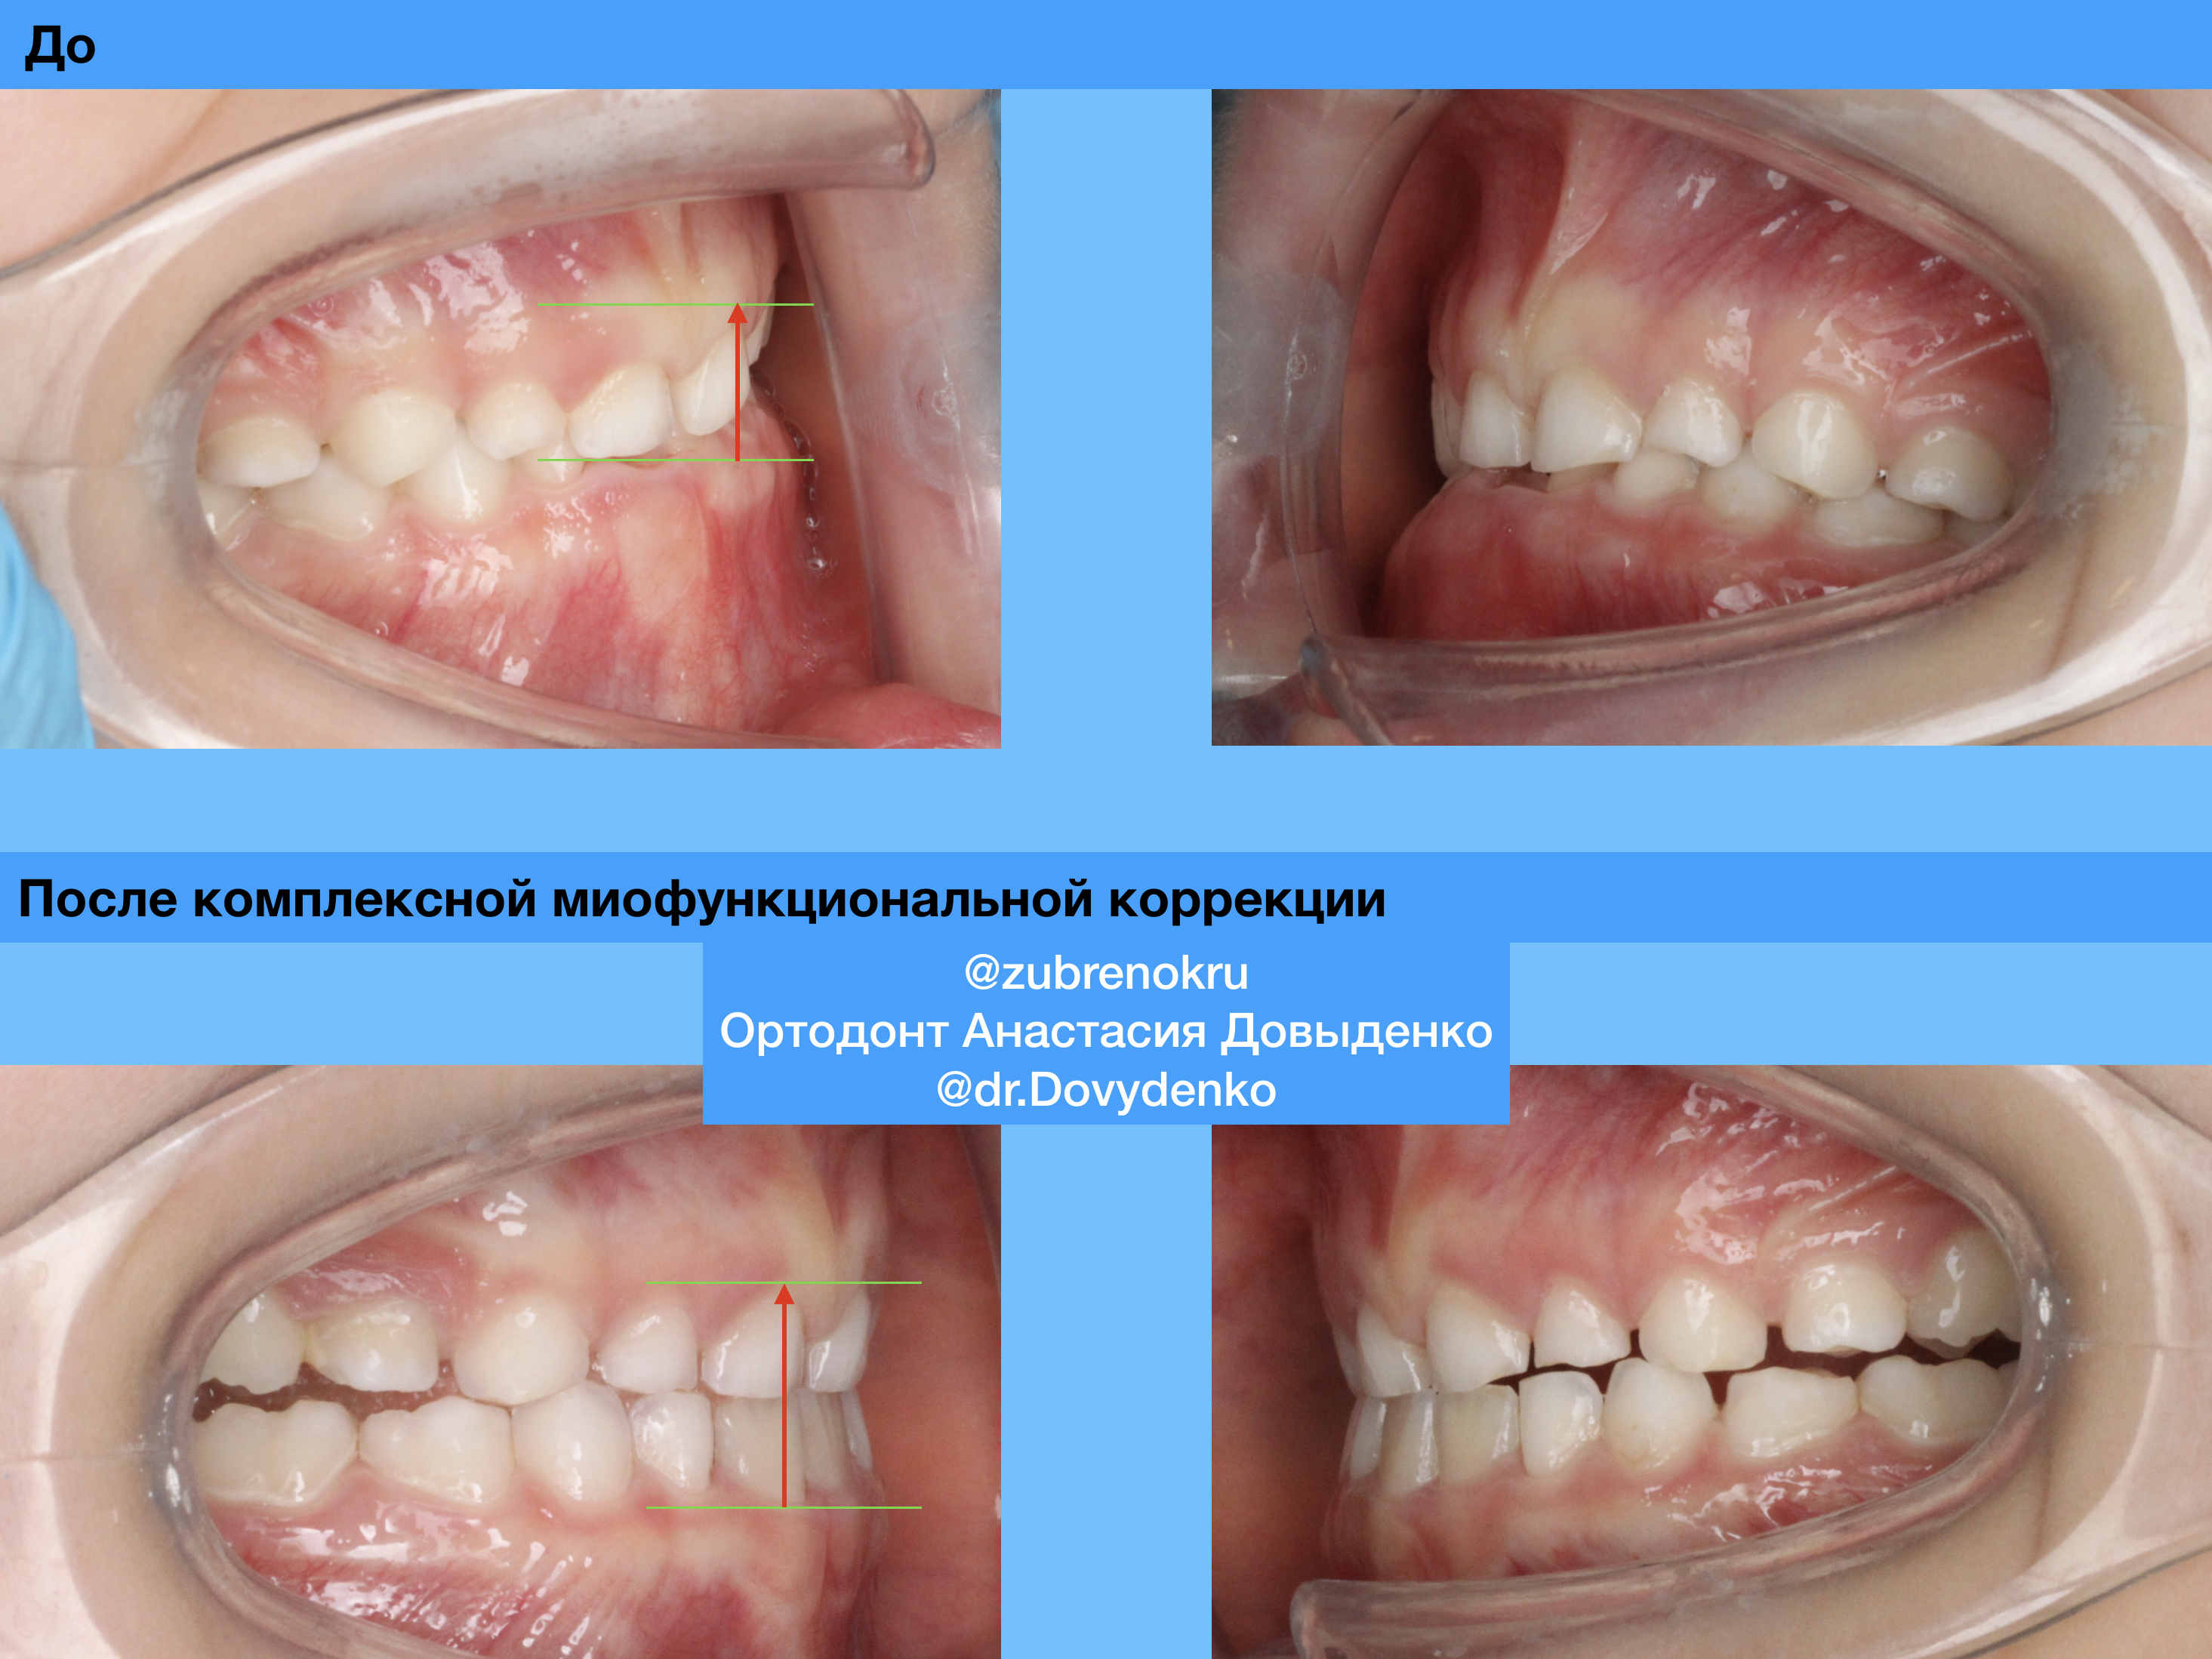 Ортодонтическое лечение с использованием силиконовой каппы Myobrace